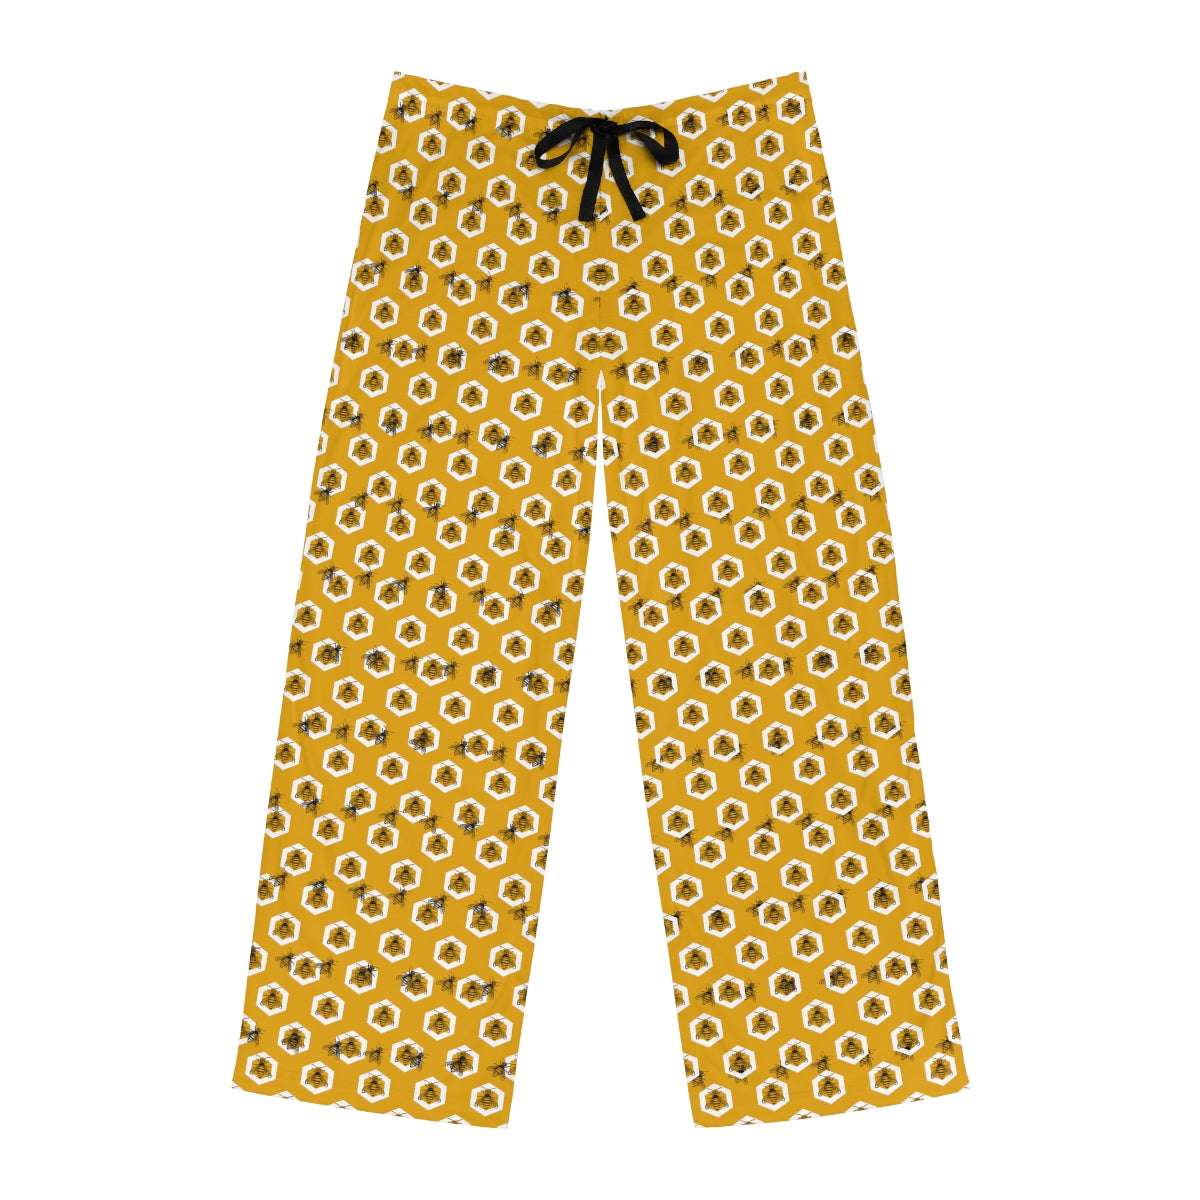 We Believe - Deseret Honey Bee Pajama Pants